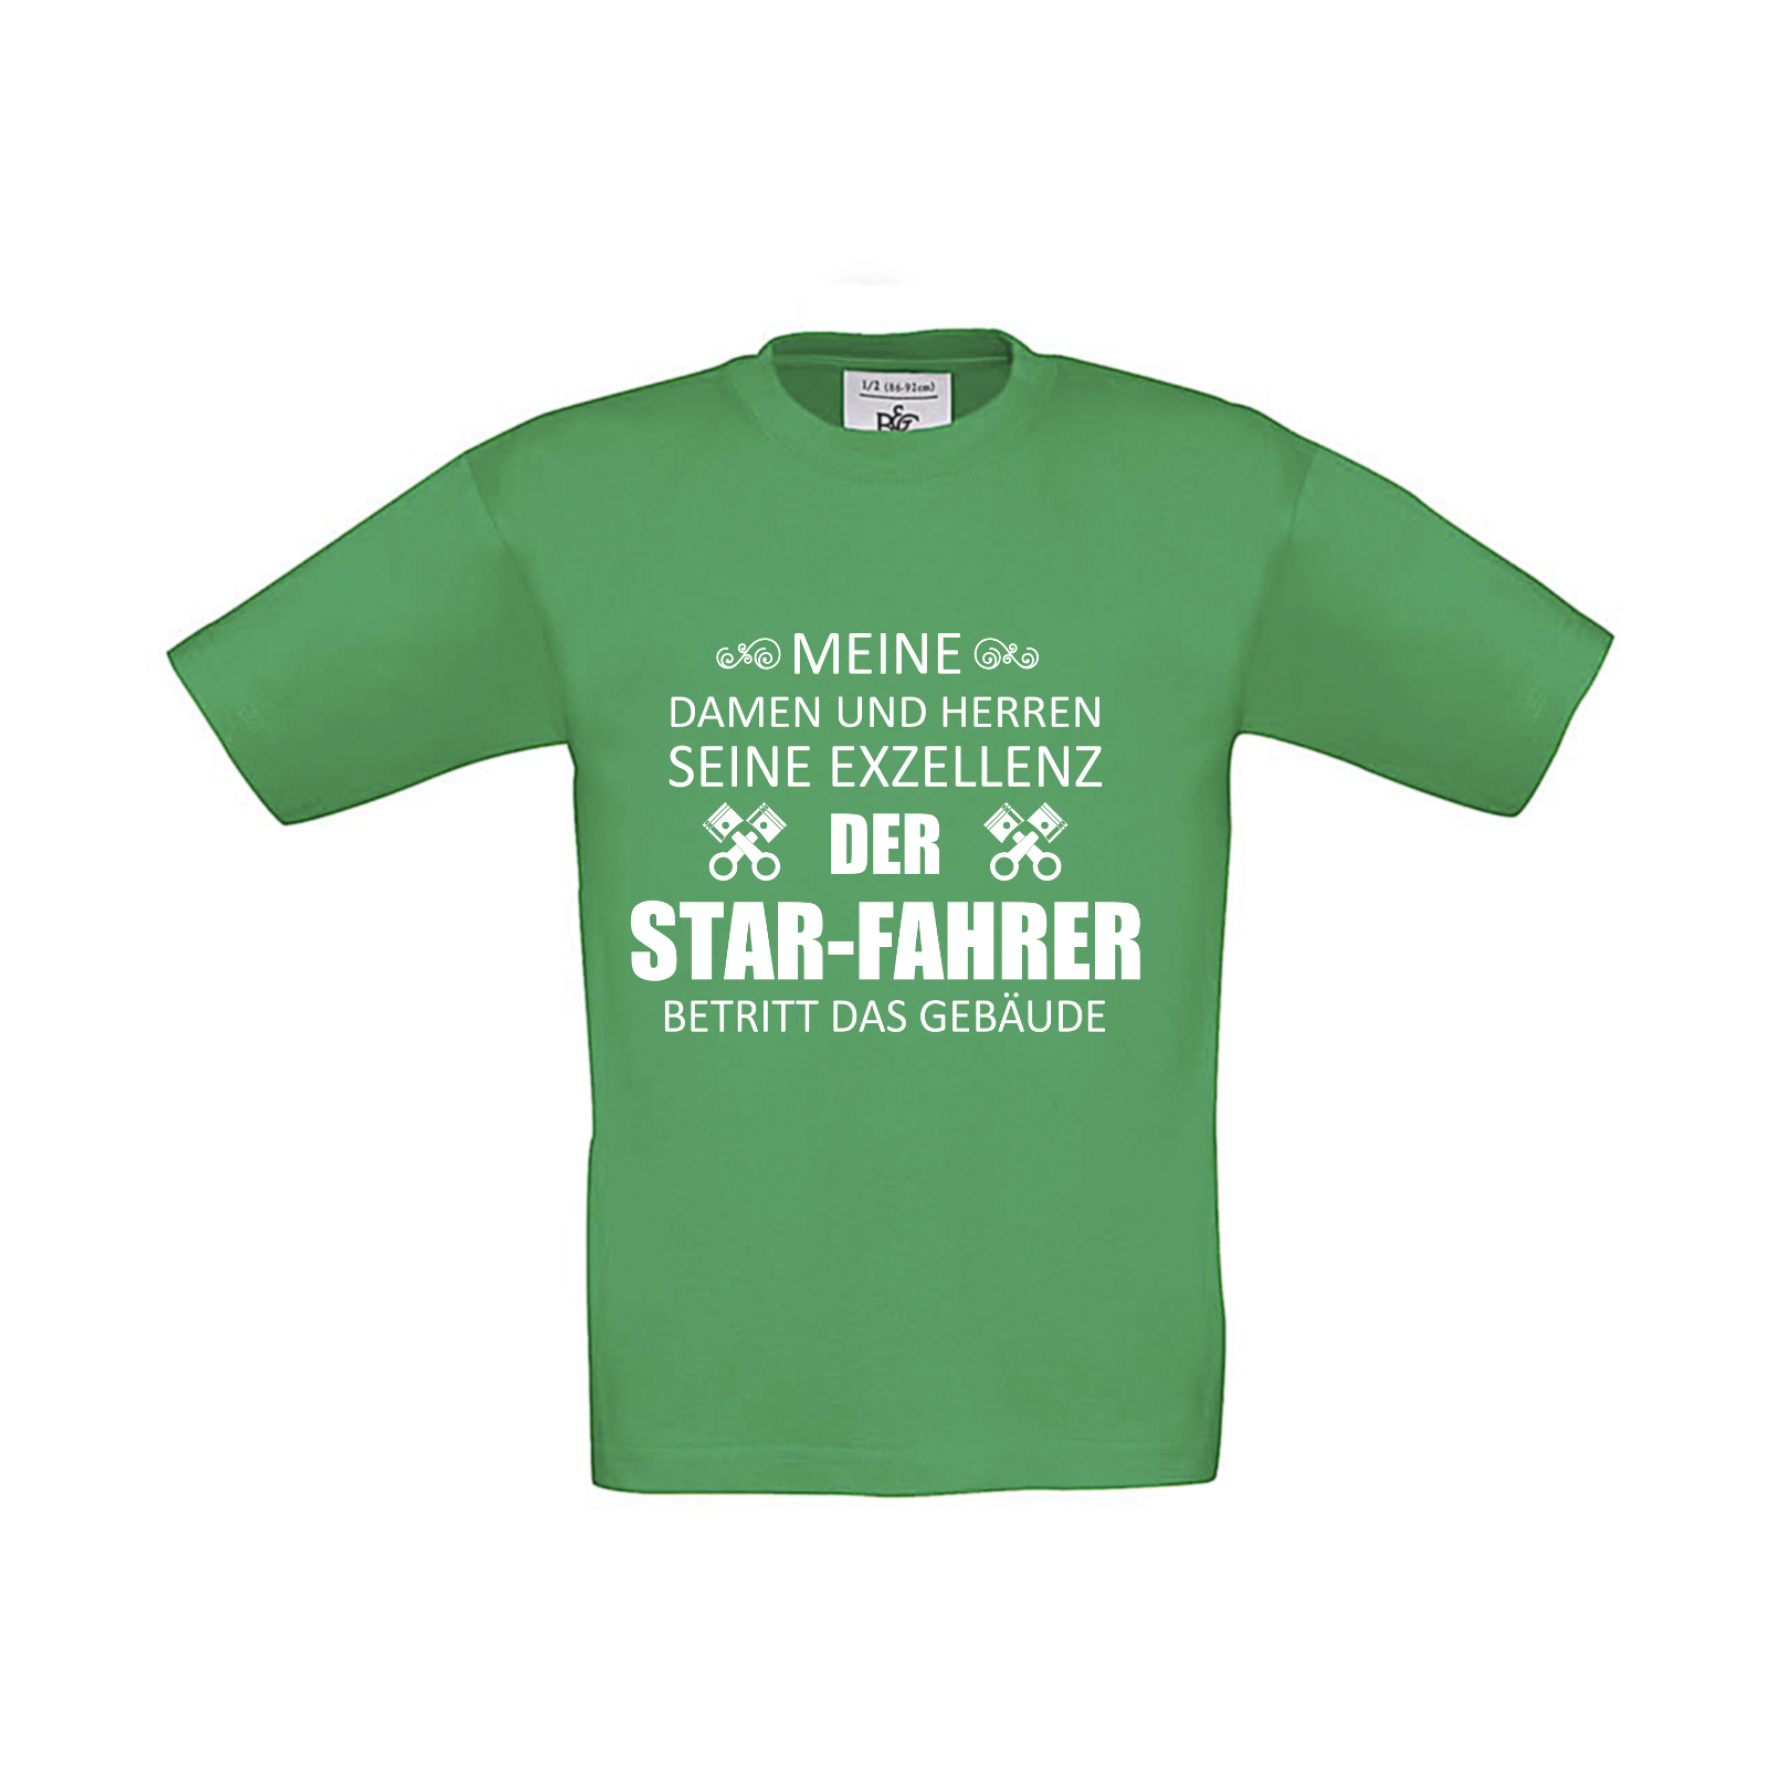 T-Shirt Kinder 2Takter - Eure Exzellenz der Star-Fahrer betritt das Gebäude